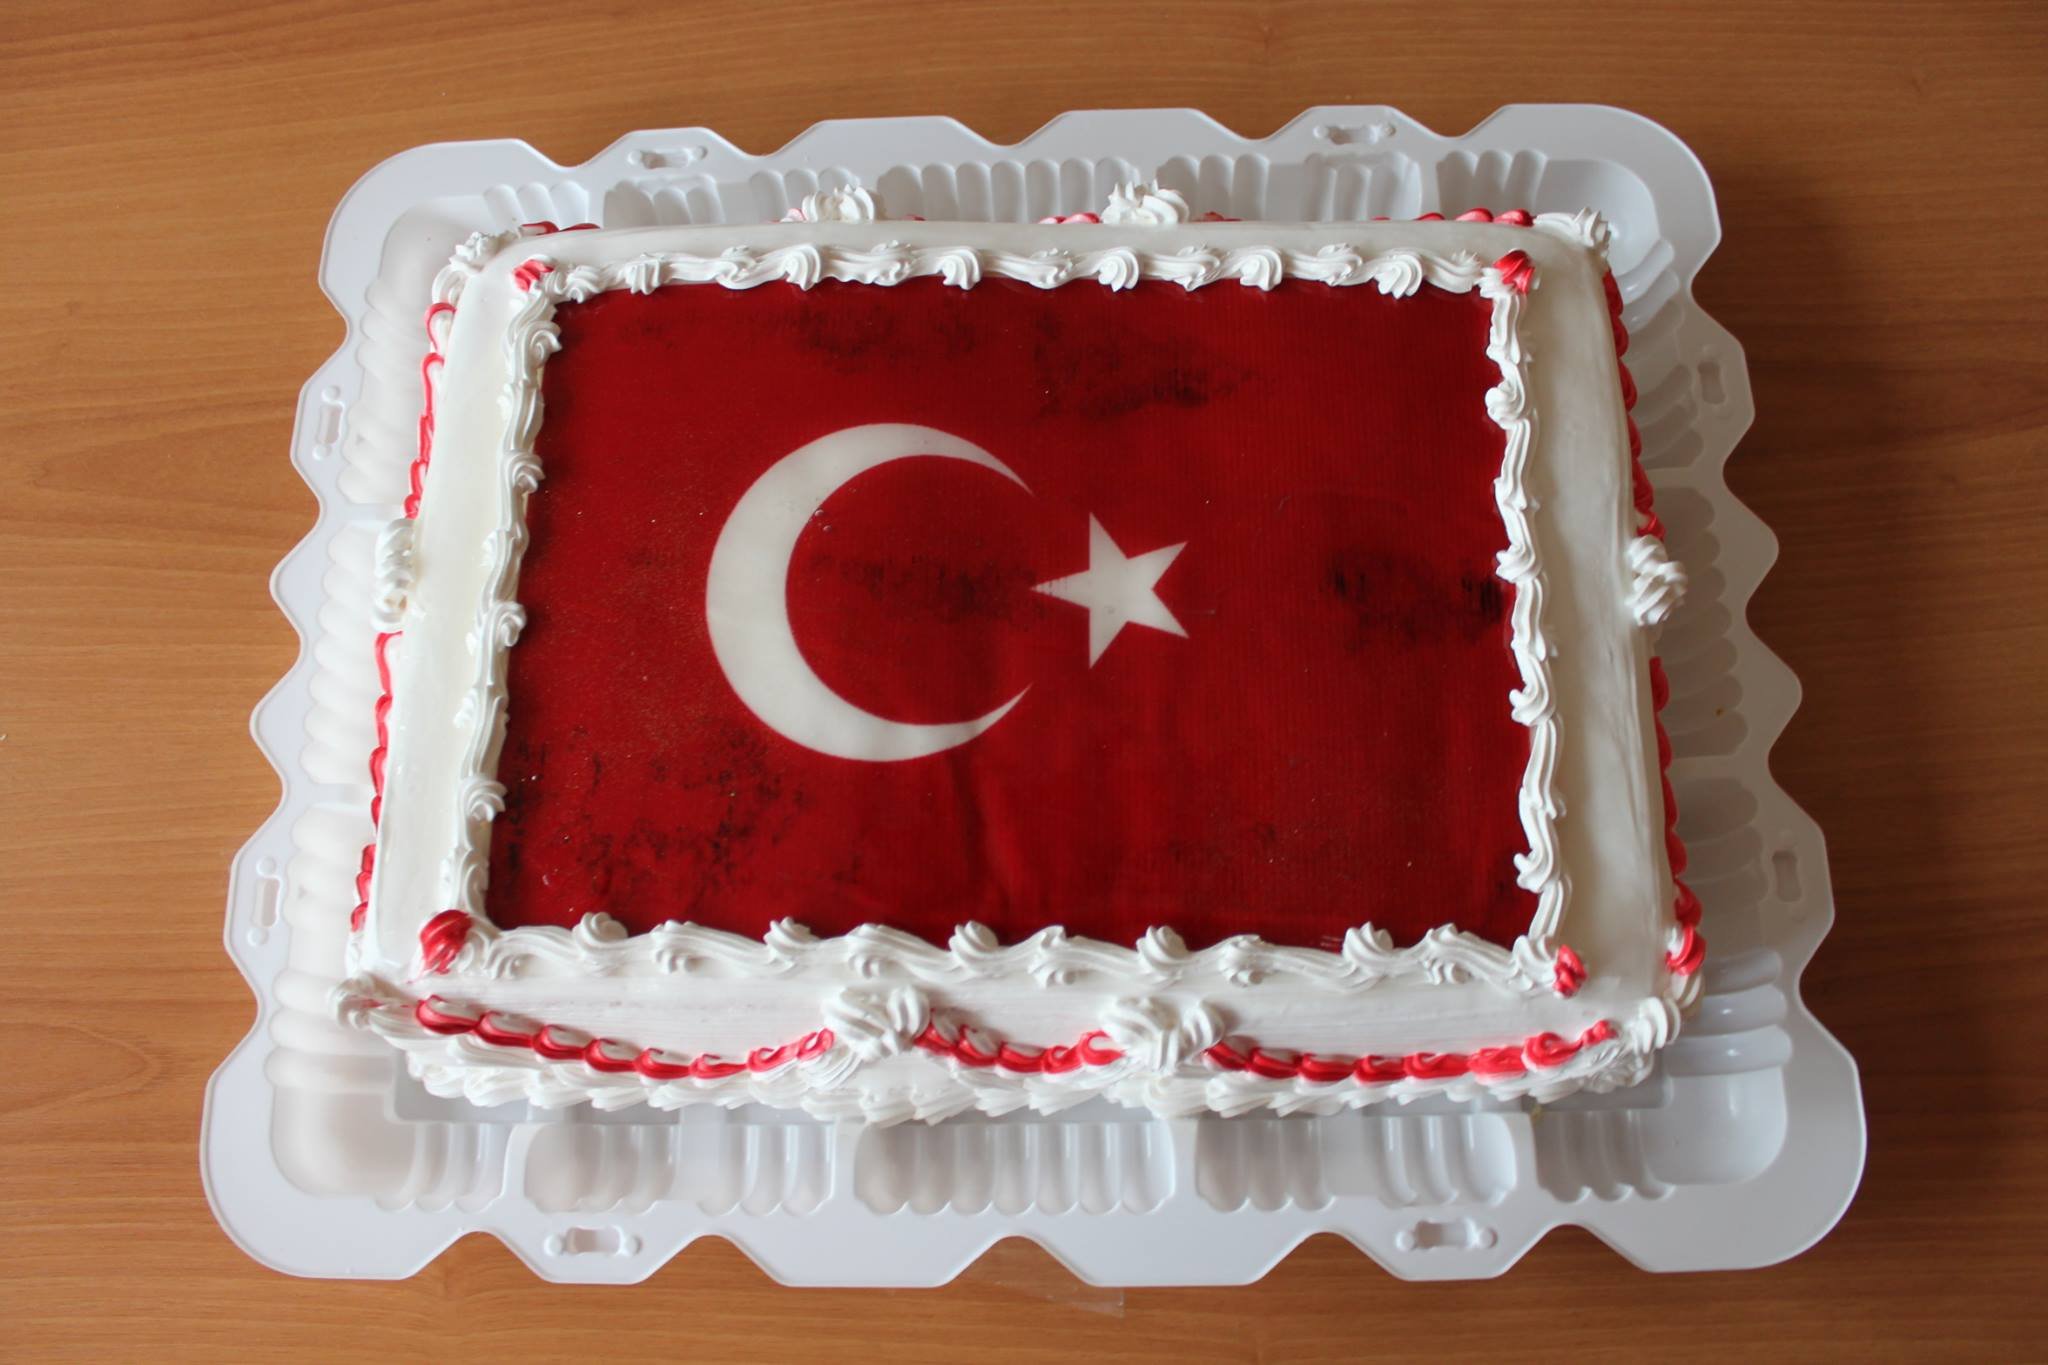 Открытки с днем рождения на турецком